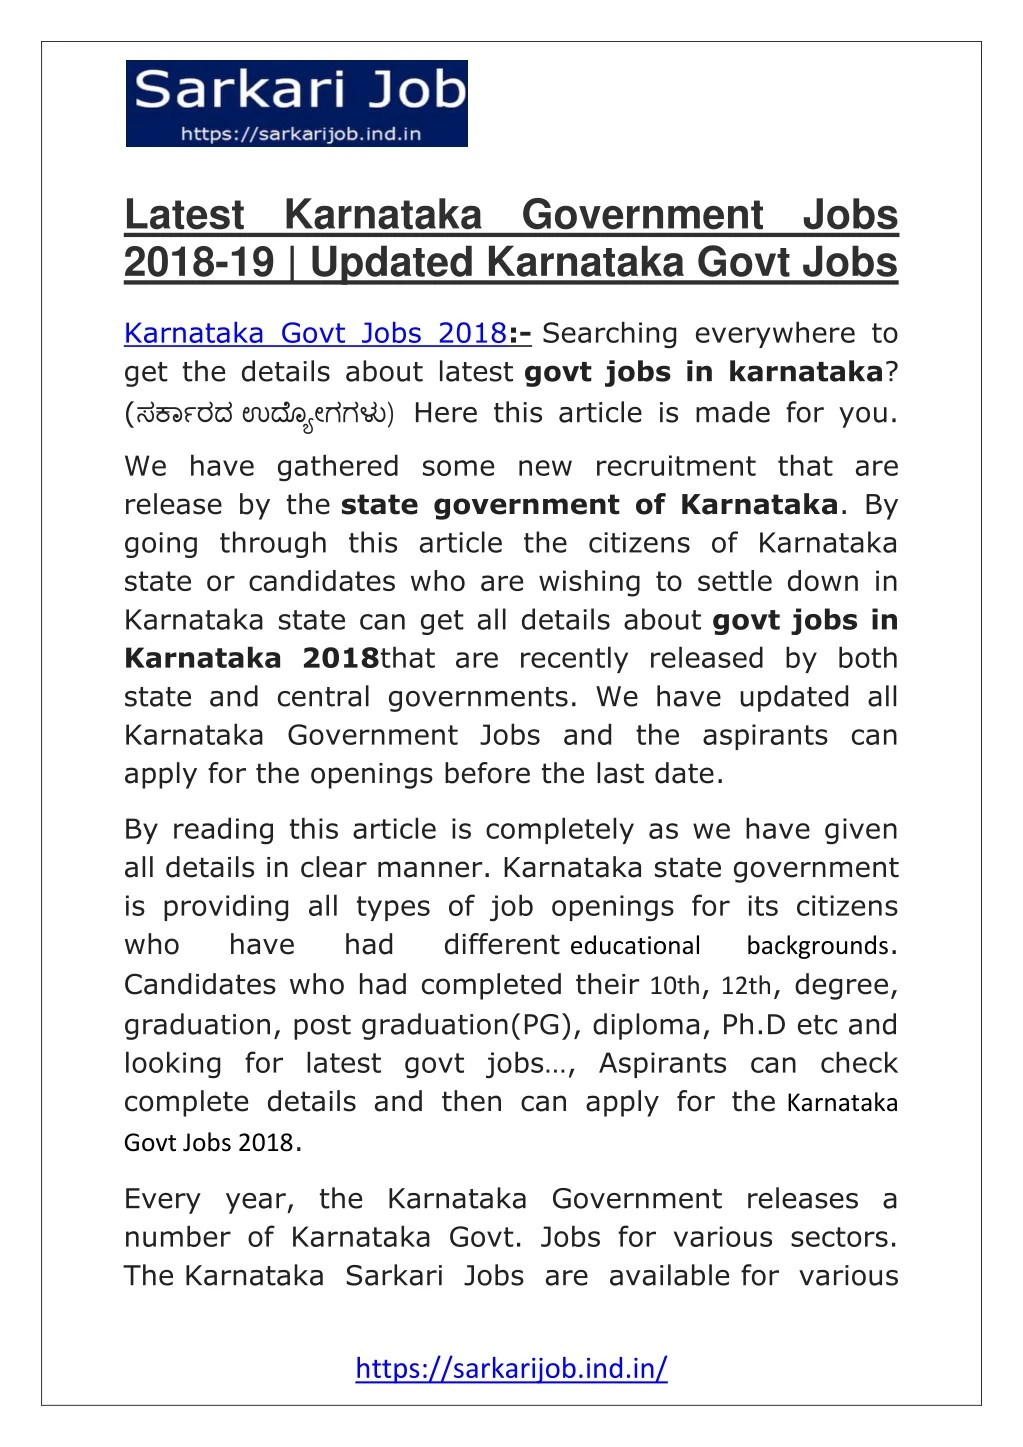 latest karnataka government jobs 2018 19 updated